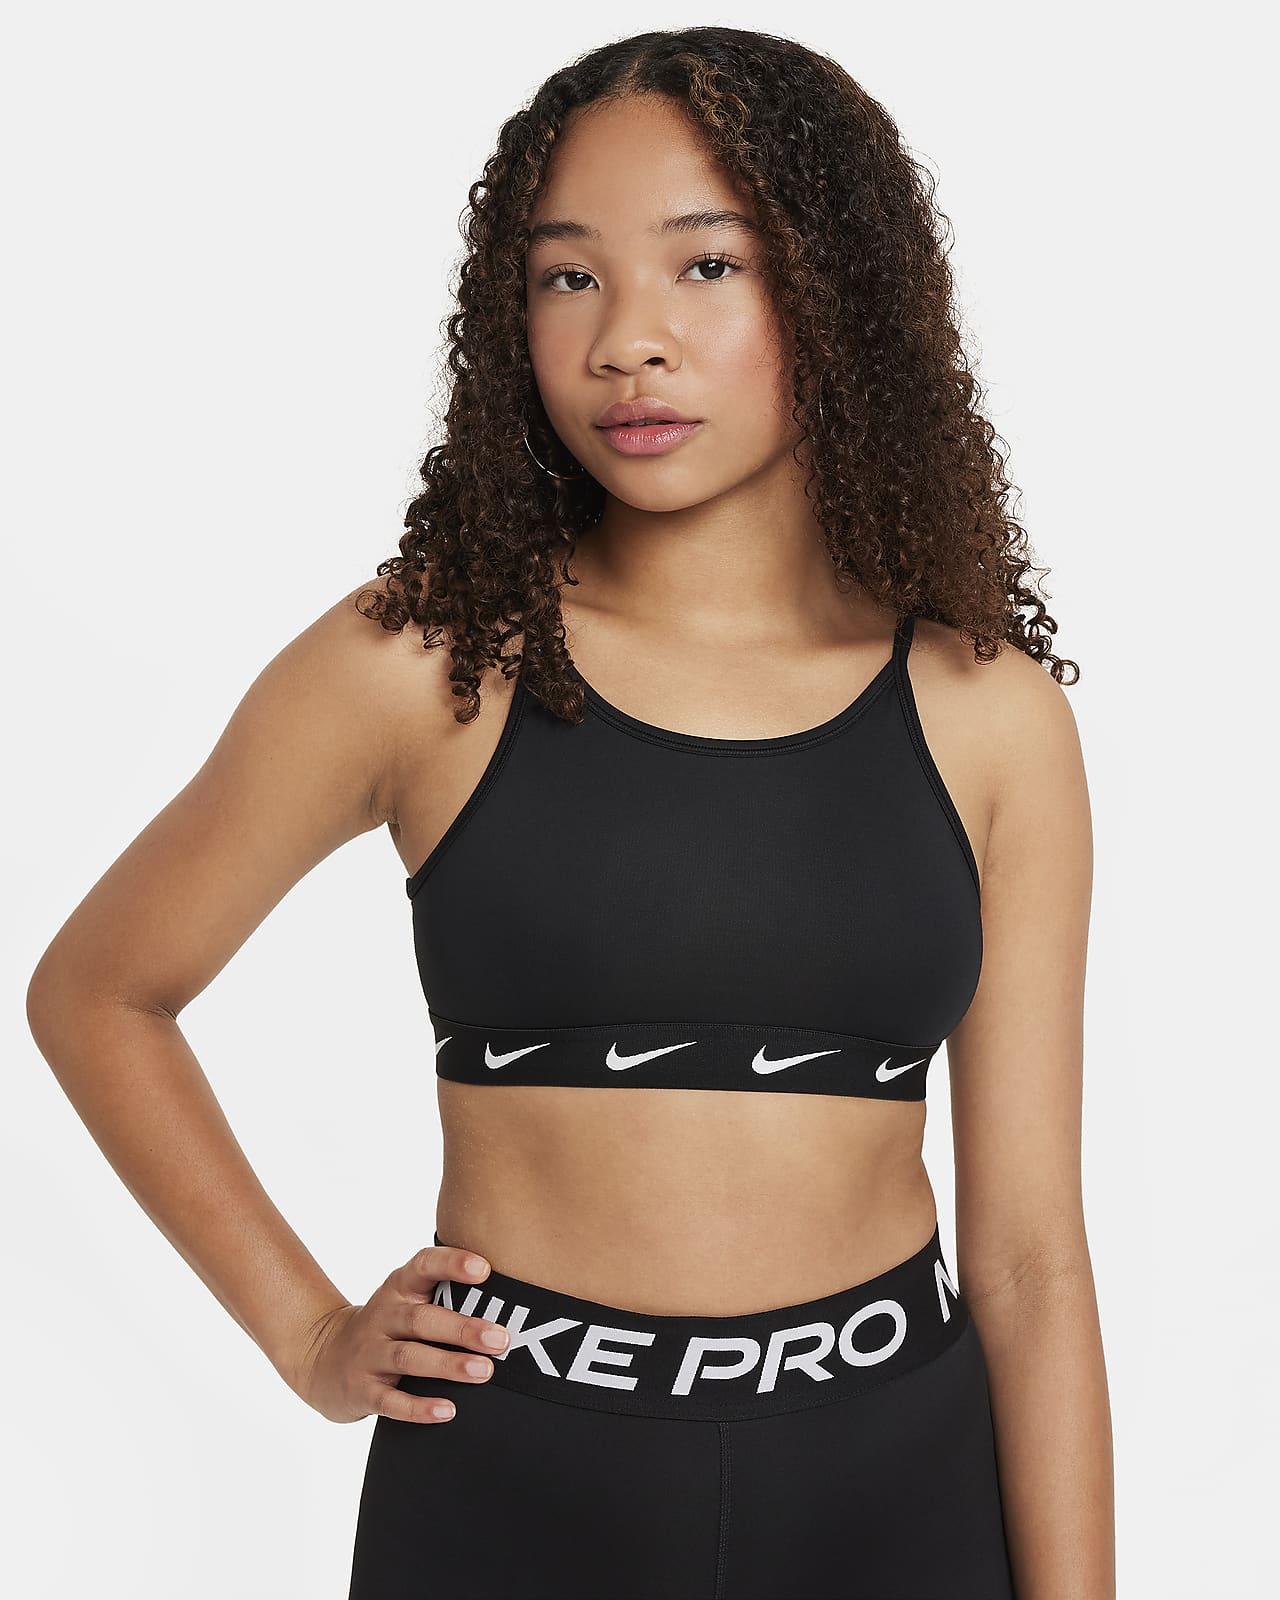 Women's Sports Bra Fit Guide. Nike CH